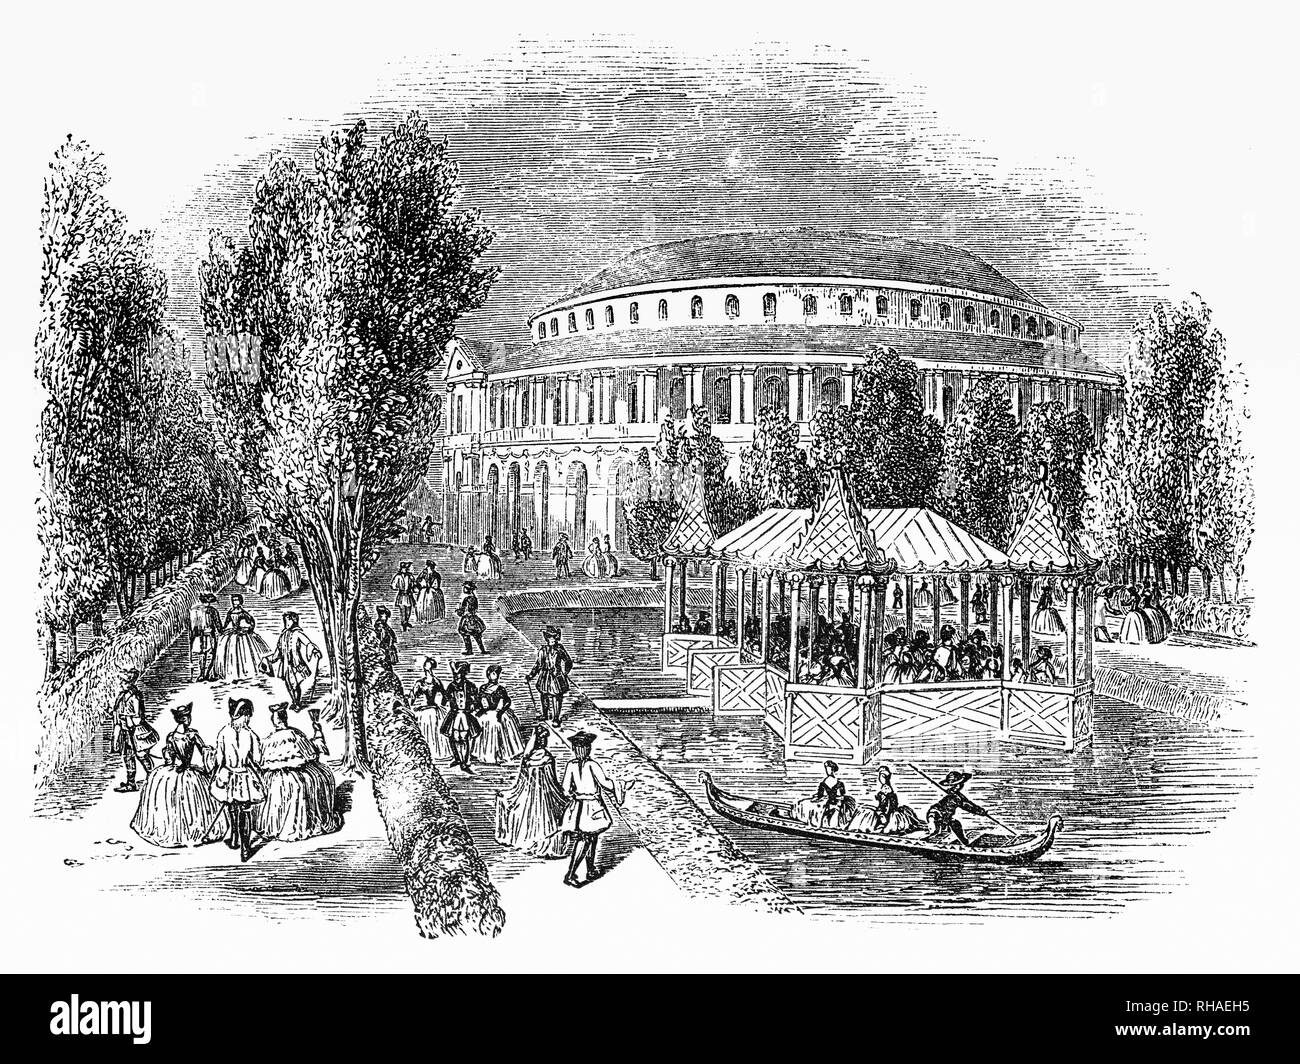 Ranelagh Gärten waren 18. Jahrhundert öffentlichen Gärten in Chelsea gelegen, und nur außerhalb von London, England. Im Jahre 1742, das Haus und das Grundstück waren für die Öffentlichkeit geöffnet. Das Herzstück war ein Rokoko Rundbau, von William Jones, ein Gutachter der East India Company, ein wichtiger Ort für Konzerte in 1765, den 9-jährigen Mozart es durchgeführt. Es gibt auch einen Chinesischen Pavillon, die im Jahre 1750 hinzugefügt wurde, einen zierteich und verschiedene Wanderungen. Es ist jetzt Teil des Geländes von Chelsea Hospital und dem Standort der jährlichen Chelsea Flower Show. Stockfoto